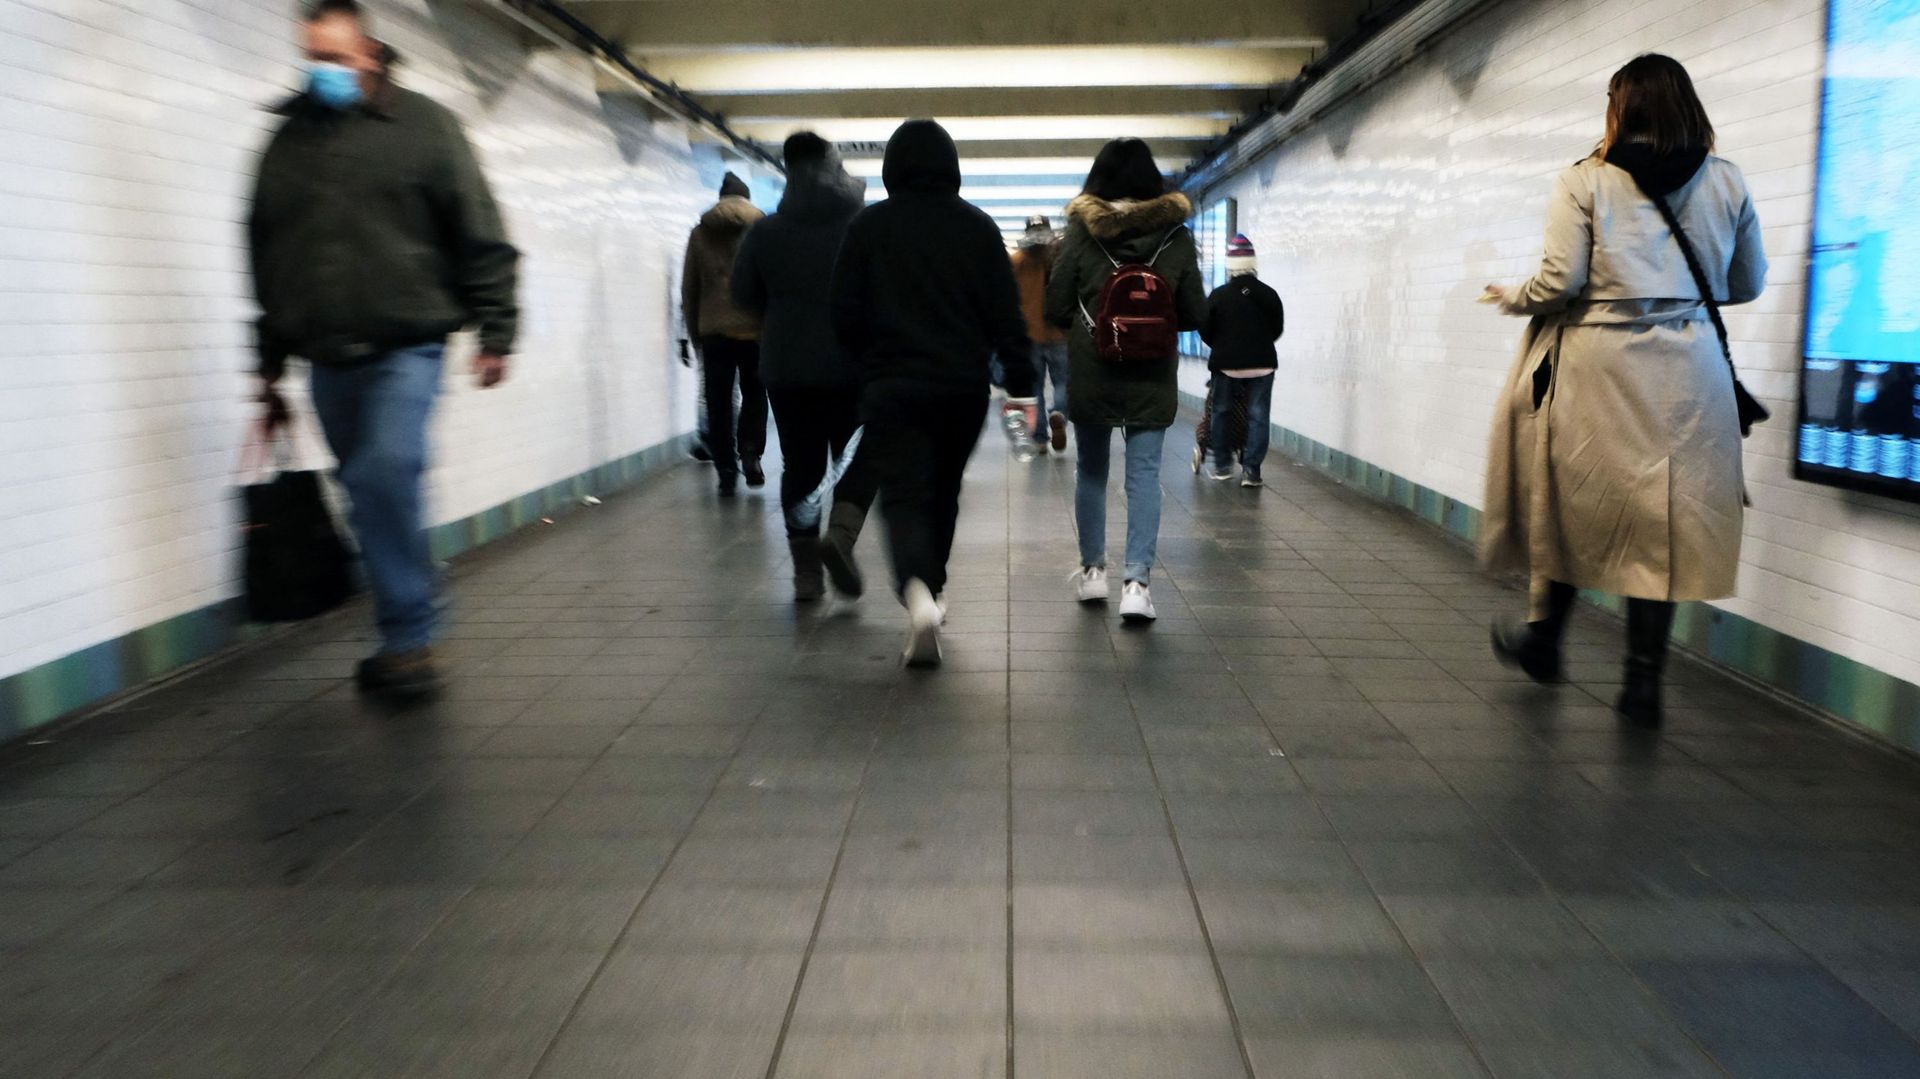 Des passants dans les couloirs du métro de New York. Image d'illustration.